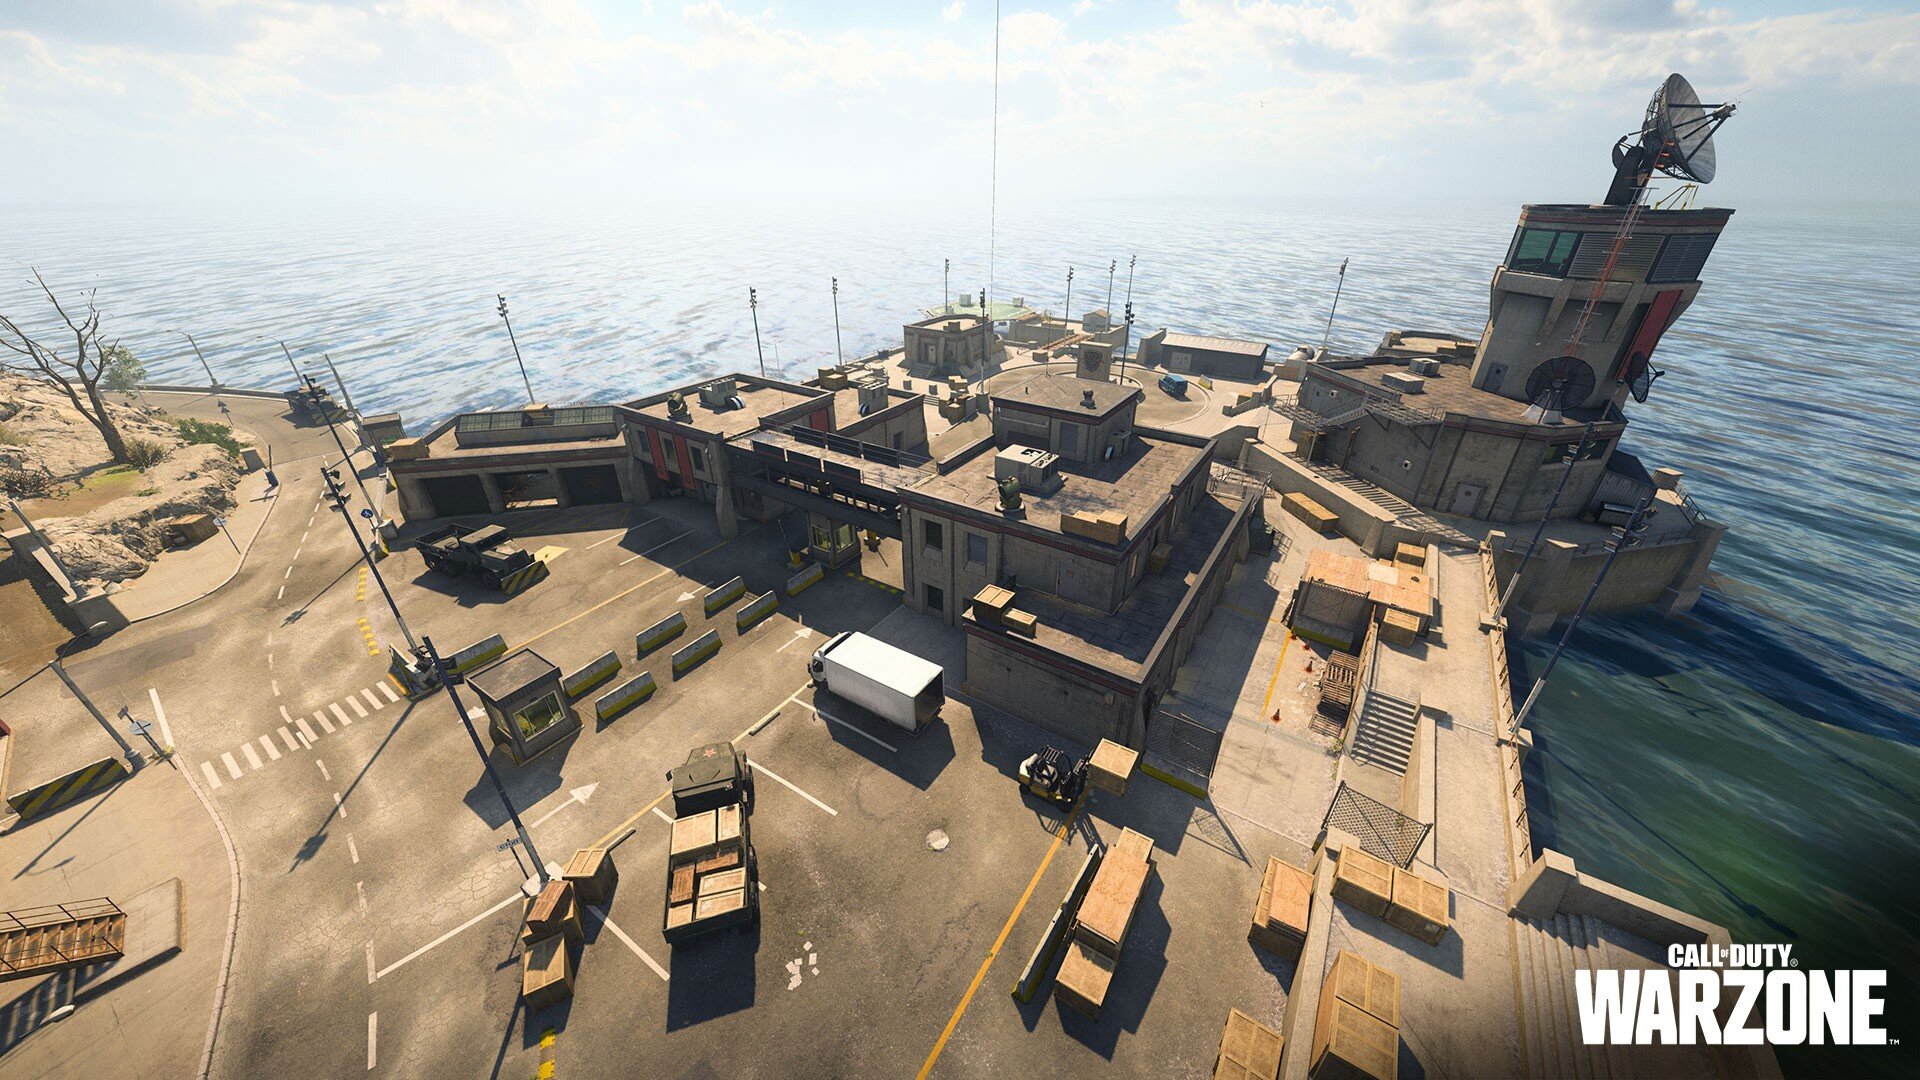 Rebirth Island - Gallery - Battle Royale, Modern Warfare - Call of Duty Maps